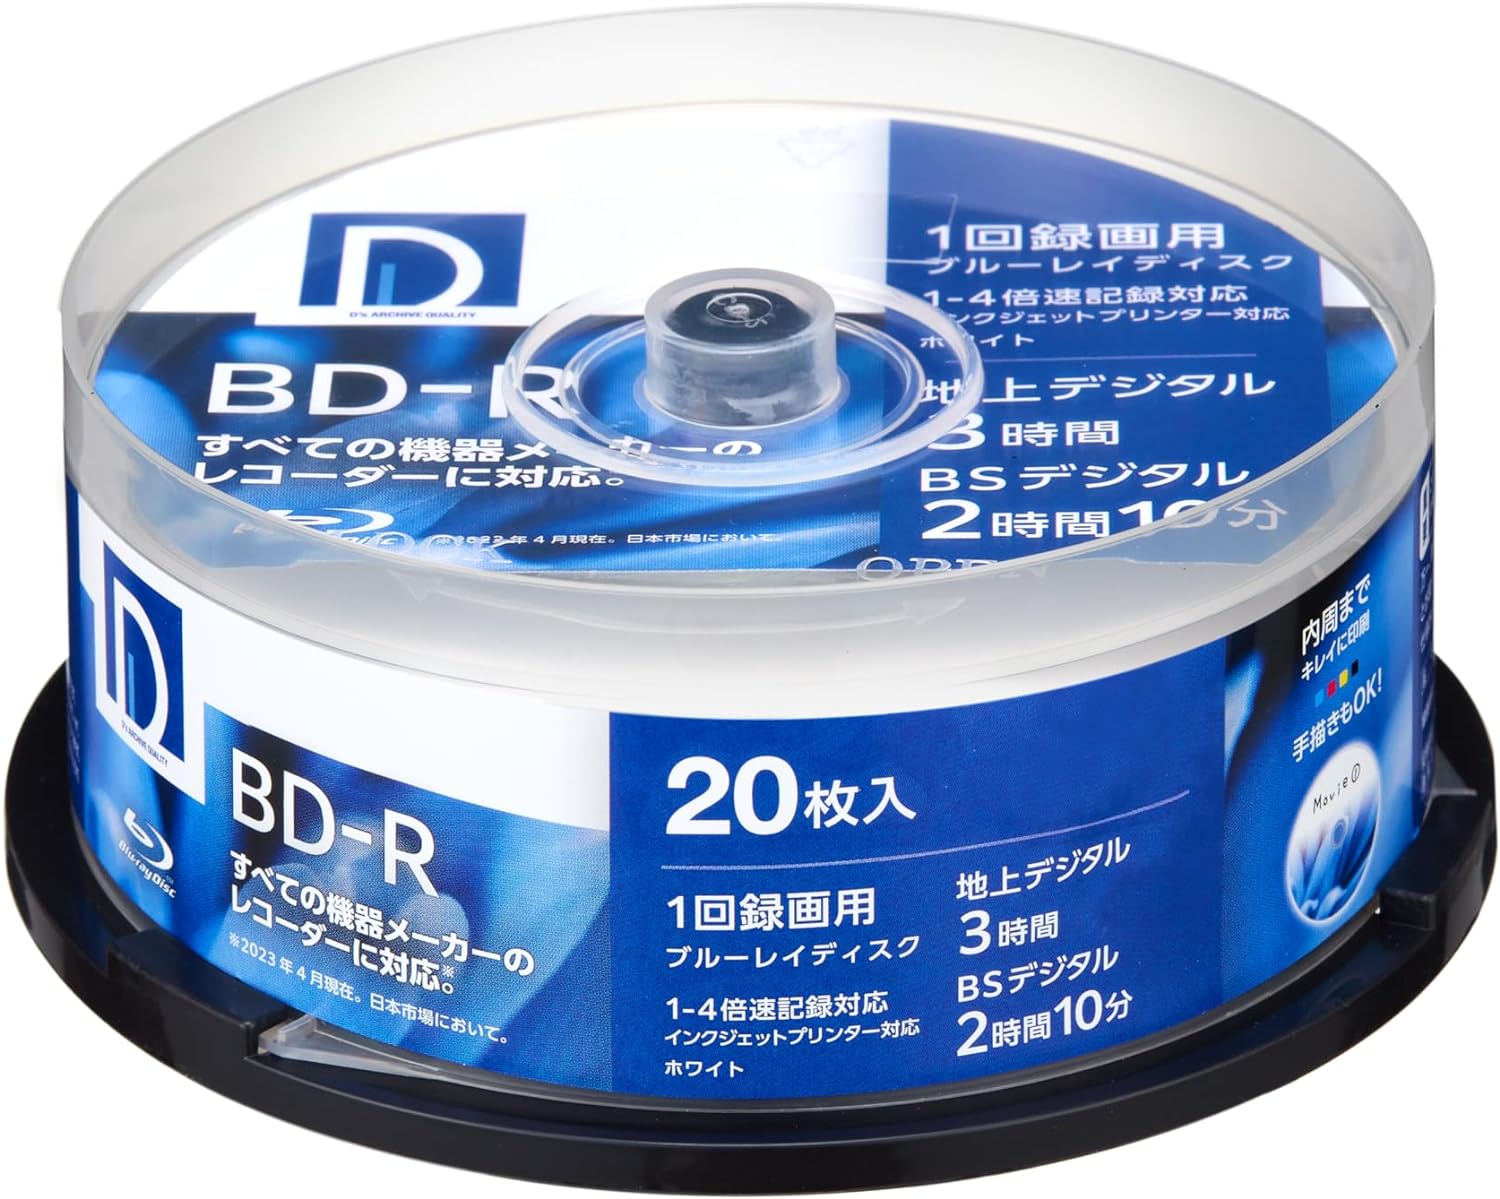 ディーズ・クオリティー D's QUALITY 録画用 BD-R 25GB 1回録画用 1-4倍速 ホワイトレーベル 20枚 スピンドルケース BR25DP.20SP